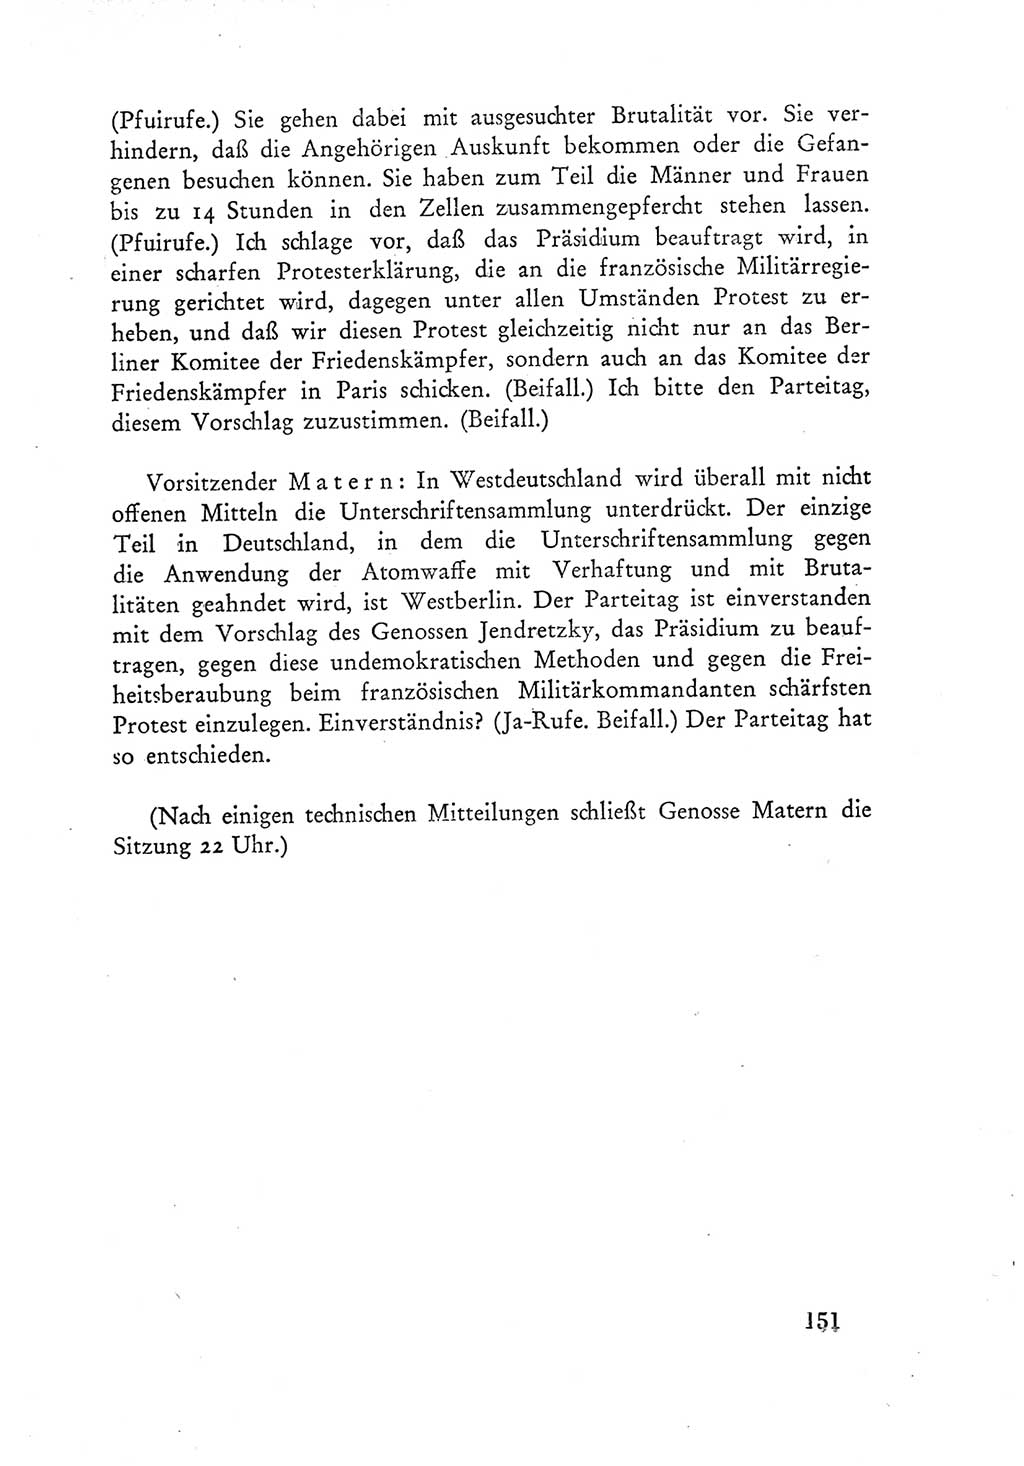 Protokoll der Verhandlungen des Ⅲ. Parteitages der Sozialistischen Einheitspartei Deutschlands (SED) [Deutsche Demokratische Republik (DDR)] 1950, Band 1, Seite 151 (Prot. Verh. Ⅲ. PT SED DDR 1950, Bd. 1, S. 151)